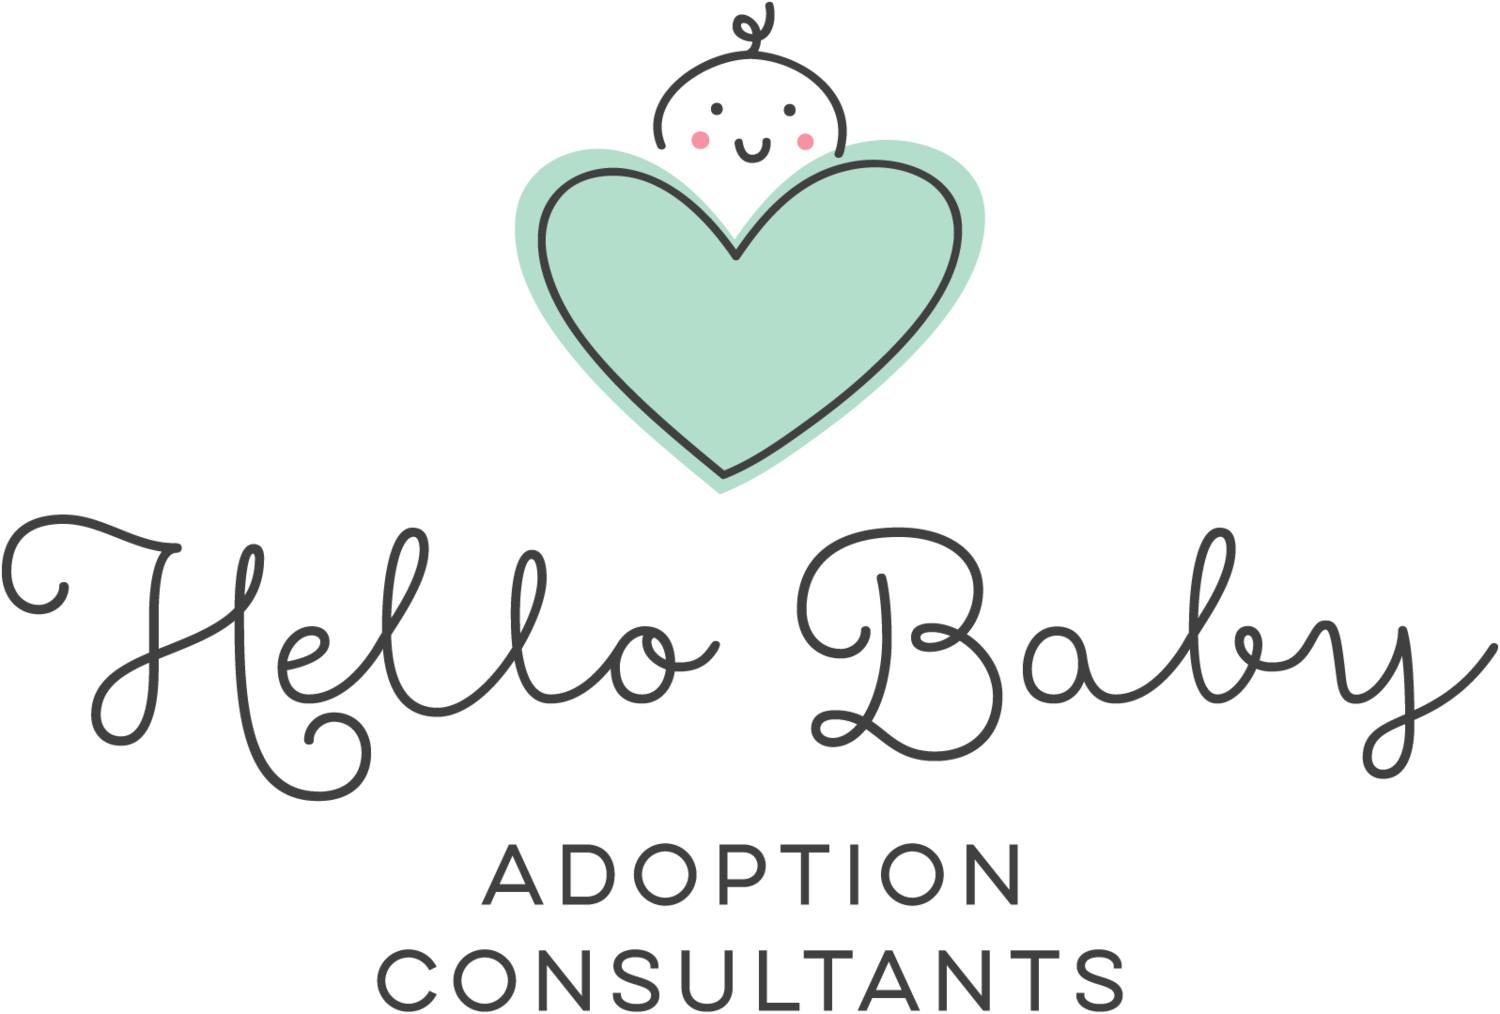 Hello Baby Adoption Consultants